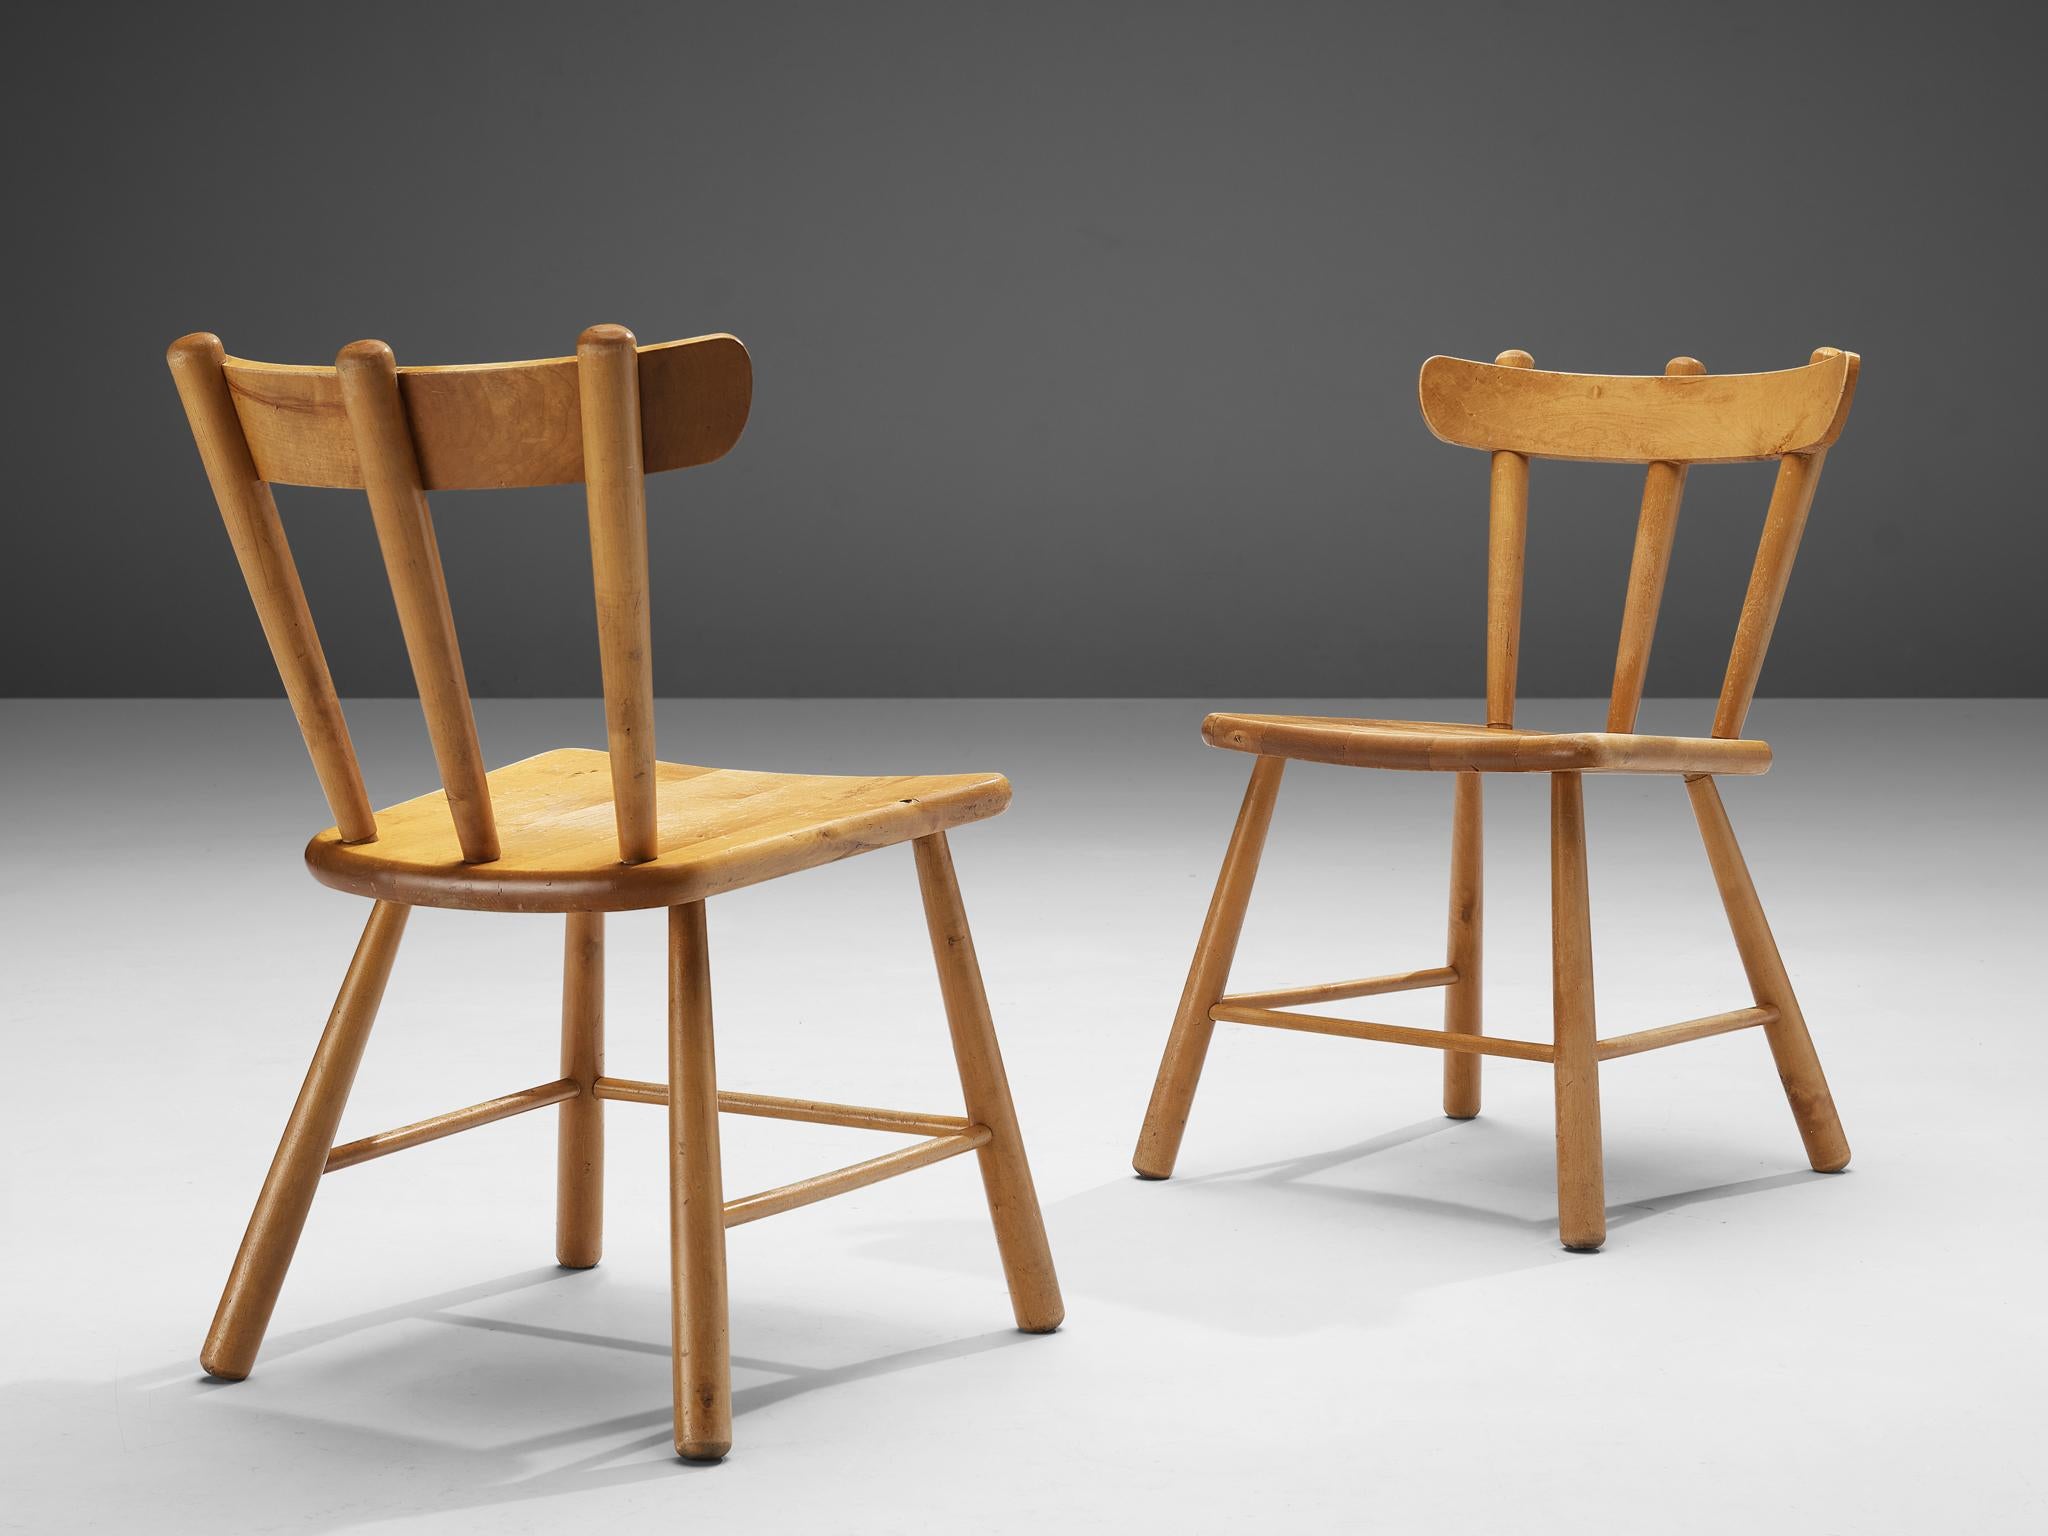 Paar Stühle, Birke, Skandinavien, 1950er Jahre.

Schönes Paar skandinavischer Stühle. Diese Stühle strahlen Eleganz und Schönheit aus. Dieses gut durchdachte Design vereint Ästhetik und Komfort. Eine geschwungene Rückenlehne wird von dünnen Spindeln